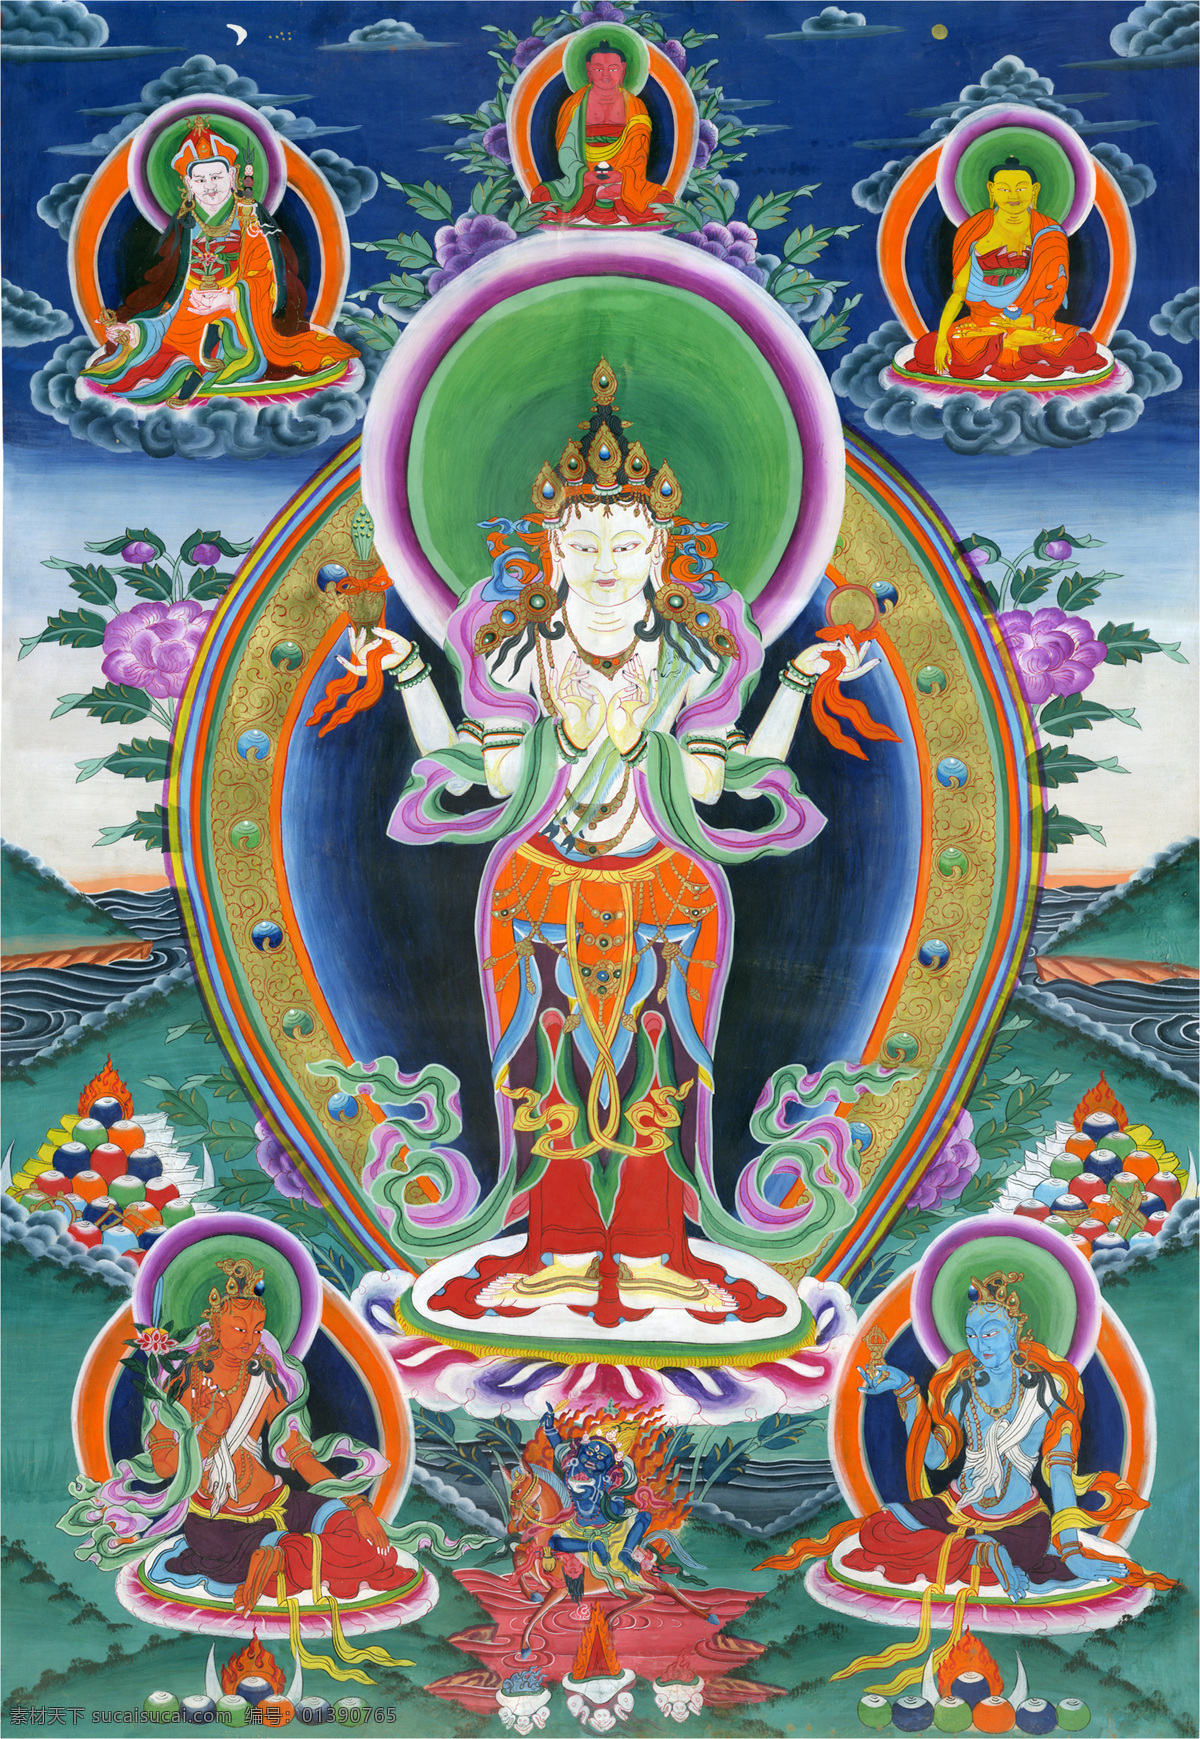 唐卡 佛教 藏传佛教 佛 宗教 宗教信仰 菩萨 西藏 民族 工艺 花纹 绘画 艺术 绘画书法 文化艺术 观音